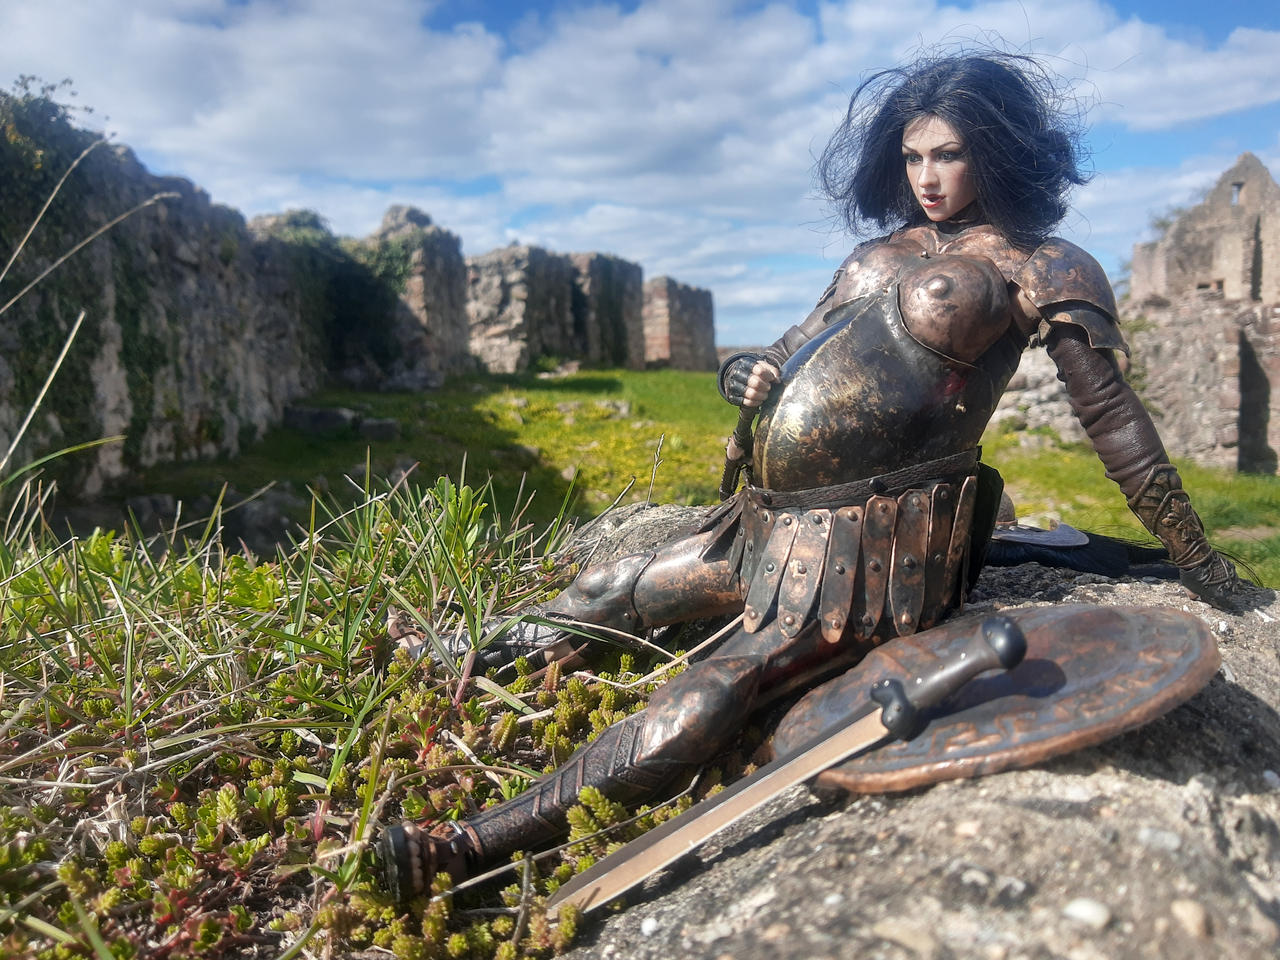 les femmes et leurs armures Spartan_warrior_2_by_tomhil_df7km0v-fullview.jpg?token=eyJ0eXAiOiJKV1QiLCJhbGciOiJIUzI1NiJ9.eyJzdWIiOiJ1cm46YXBwOjdlMGQxODg5ODIyNjQzNzNhNWYwZDQxNWVhMGQyNmUwIiwiaXNzIjoidXJuOmFwcDo3ZTBkMTg4OTgyMjY0MzczYTVmMGQ0MTVlYTBkMjZlMCIsIm9iaiI6W1t7ImhlaWdodCI6Ijw9OTYwIiwicGF0aCI6IlwvZlwvNzhmN2M5MzctNzJhYi00NWU3LTgyYjAtZjg0ZmEwMjI4YzQyXC9kZjdrbTB2LWMwYmE5YjkzLTYwMjAtNDBmZC1iZmQ2LTRlNmNjYmFjNTg2Ny5qcGciLCJ3aWR0aCI6Ijw9MTI4MCJ9XV0sImF1ZCI6WyJ1cm46c2VydmljZTppbWFnZS5vcGVyYXRpb25zIl19